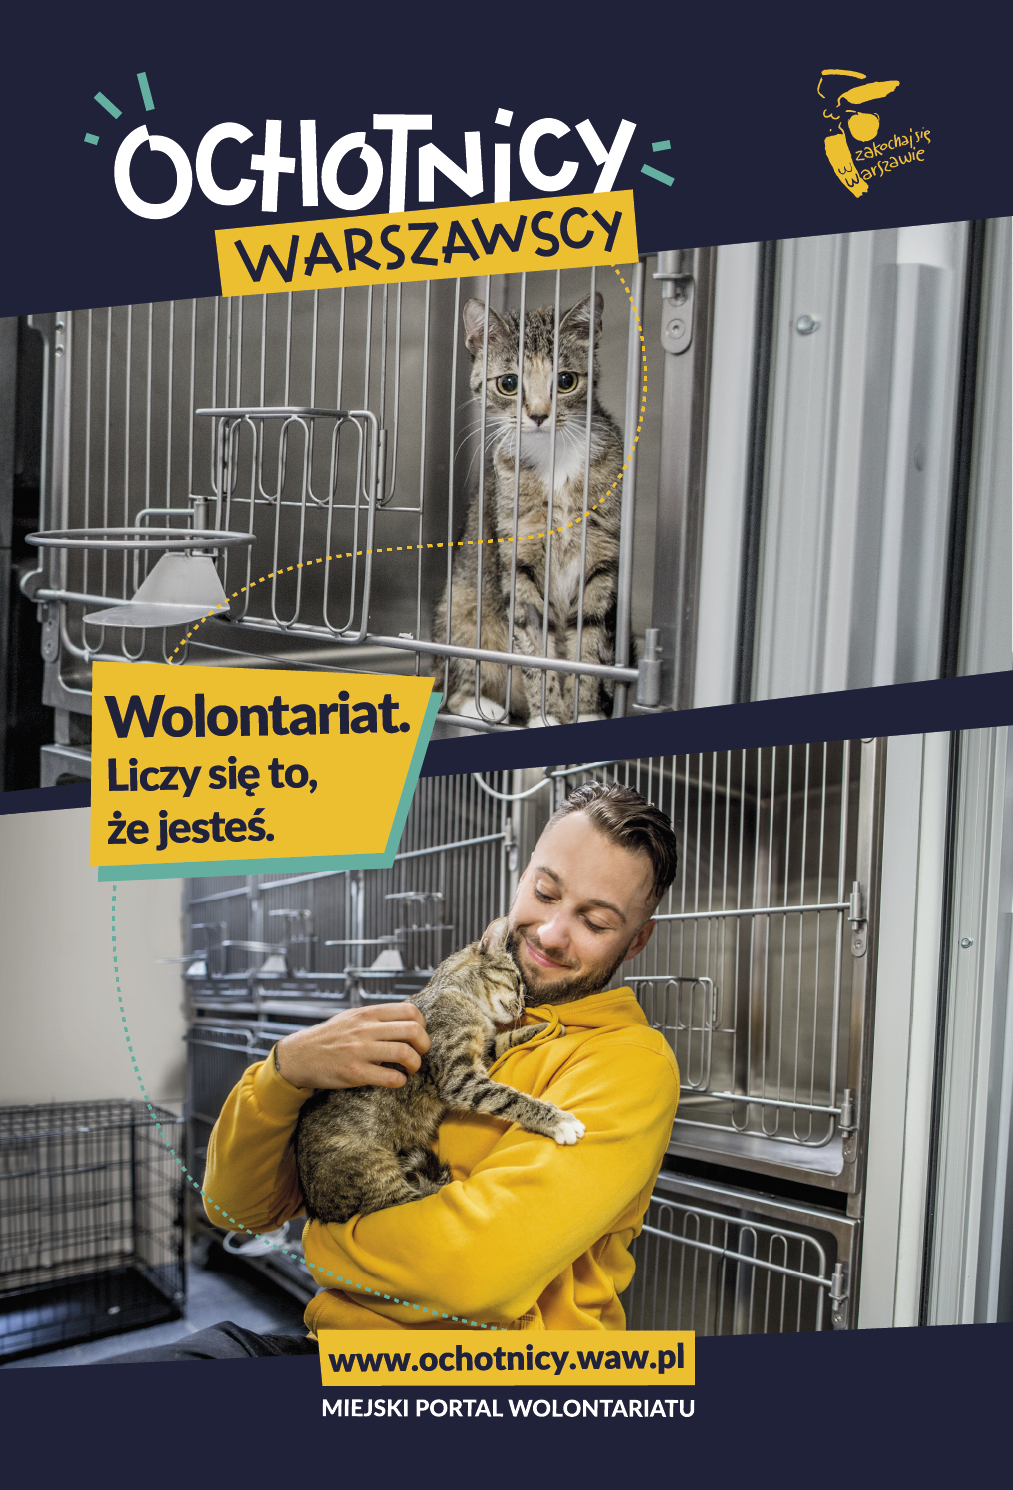 U góry plakatu bury kot o wystraszonych oczach w metalowej klatce, u dołu plakatu kot wtula się w uśmiechniętego wolontariusza